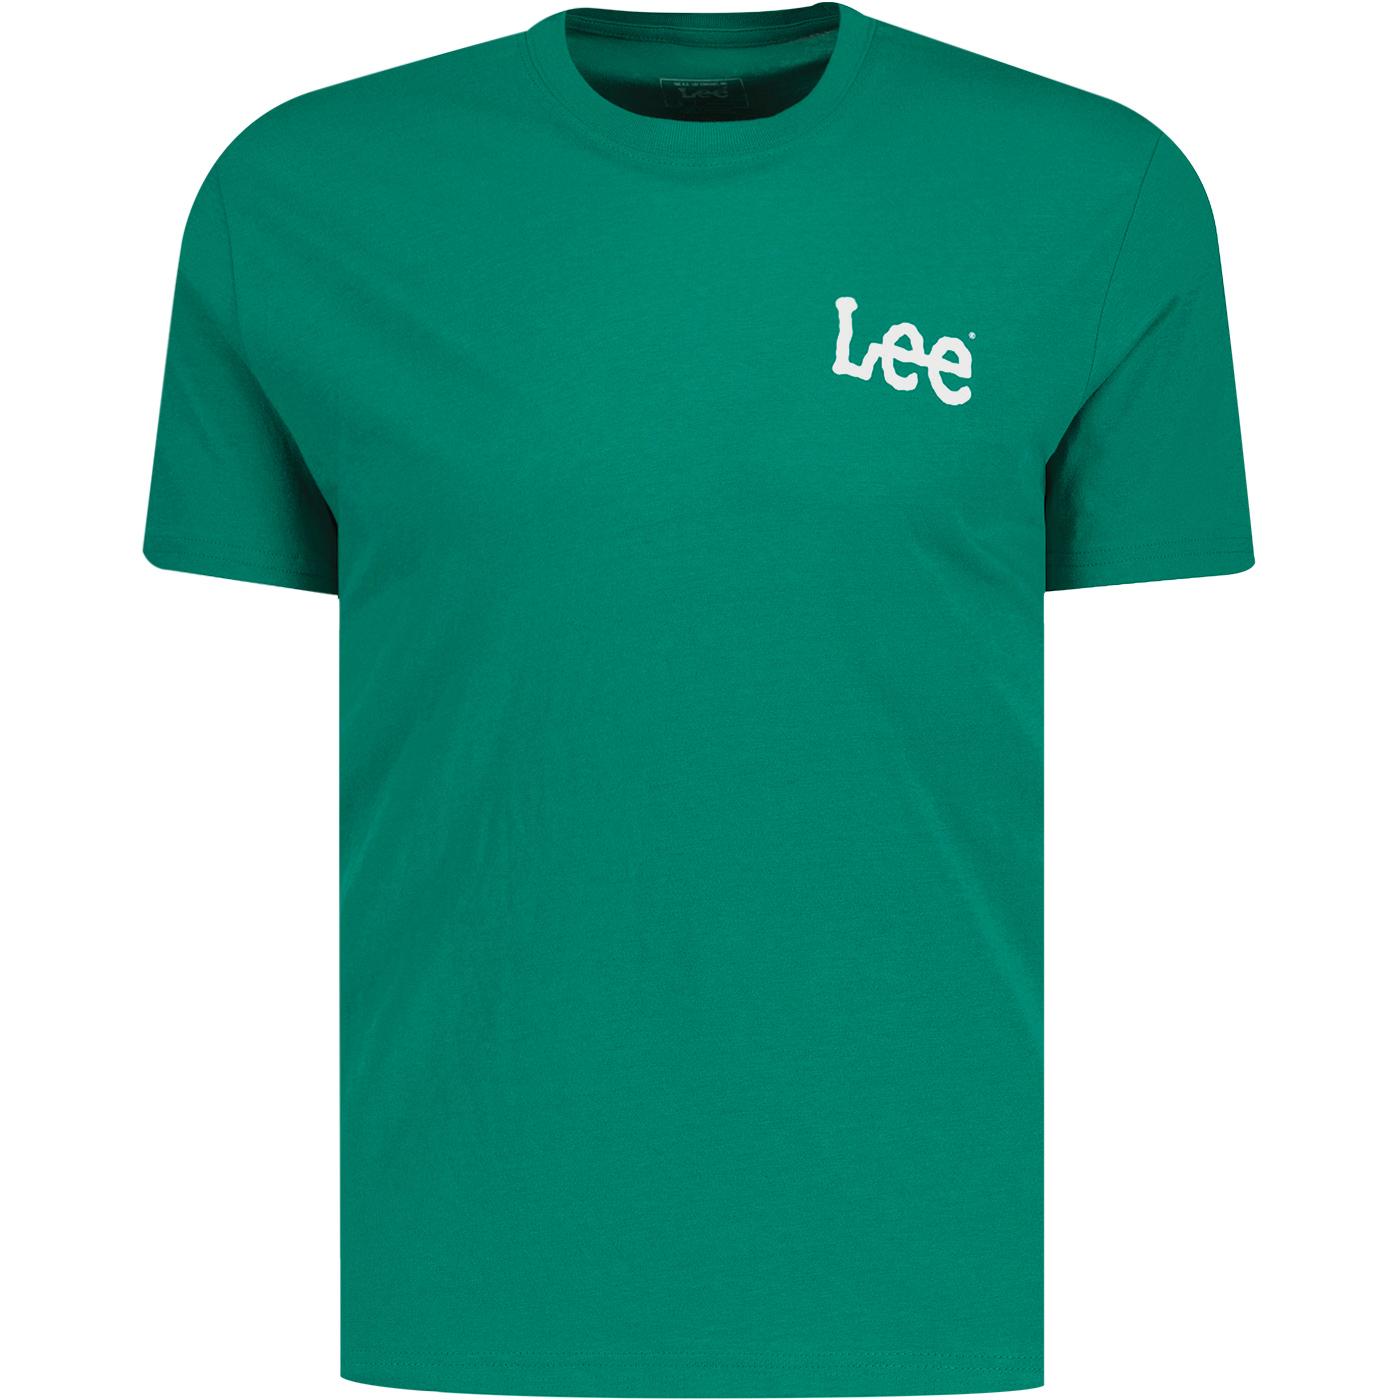  Lee Jeans Wobbly Lee Logo Crew Neck Tee (Enigma)